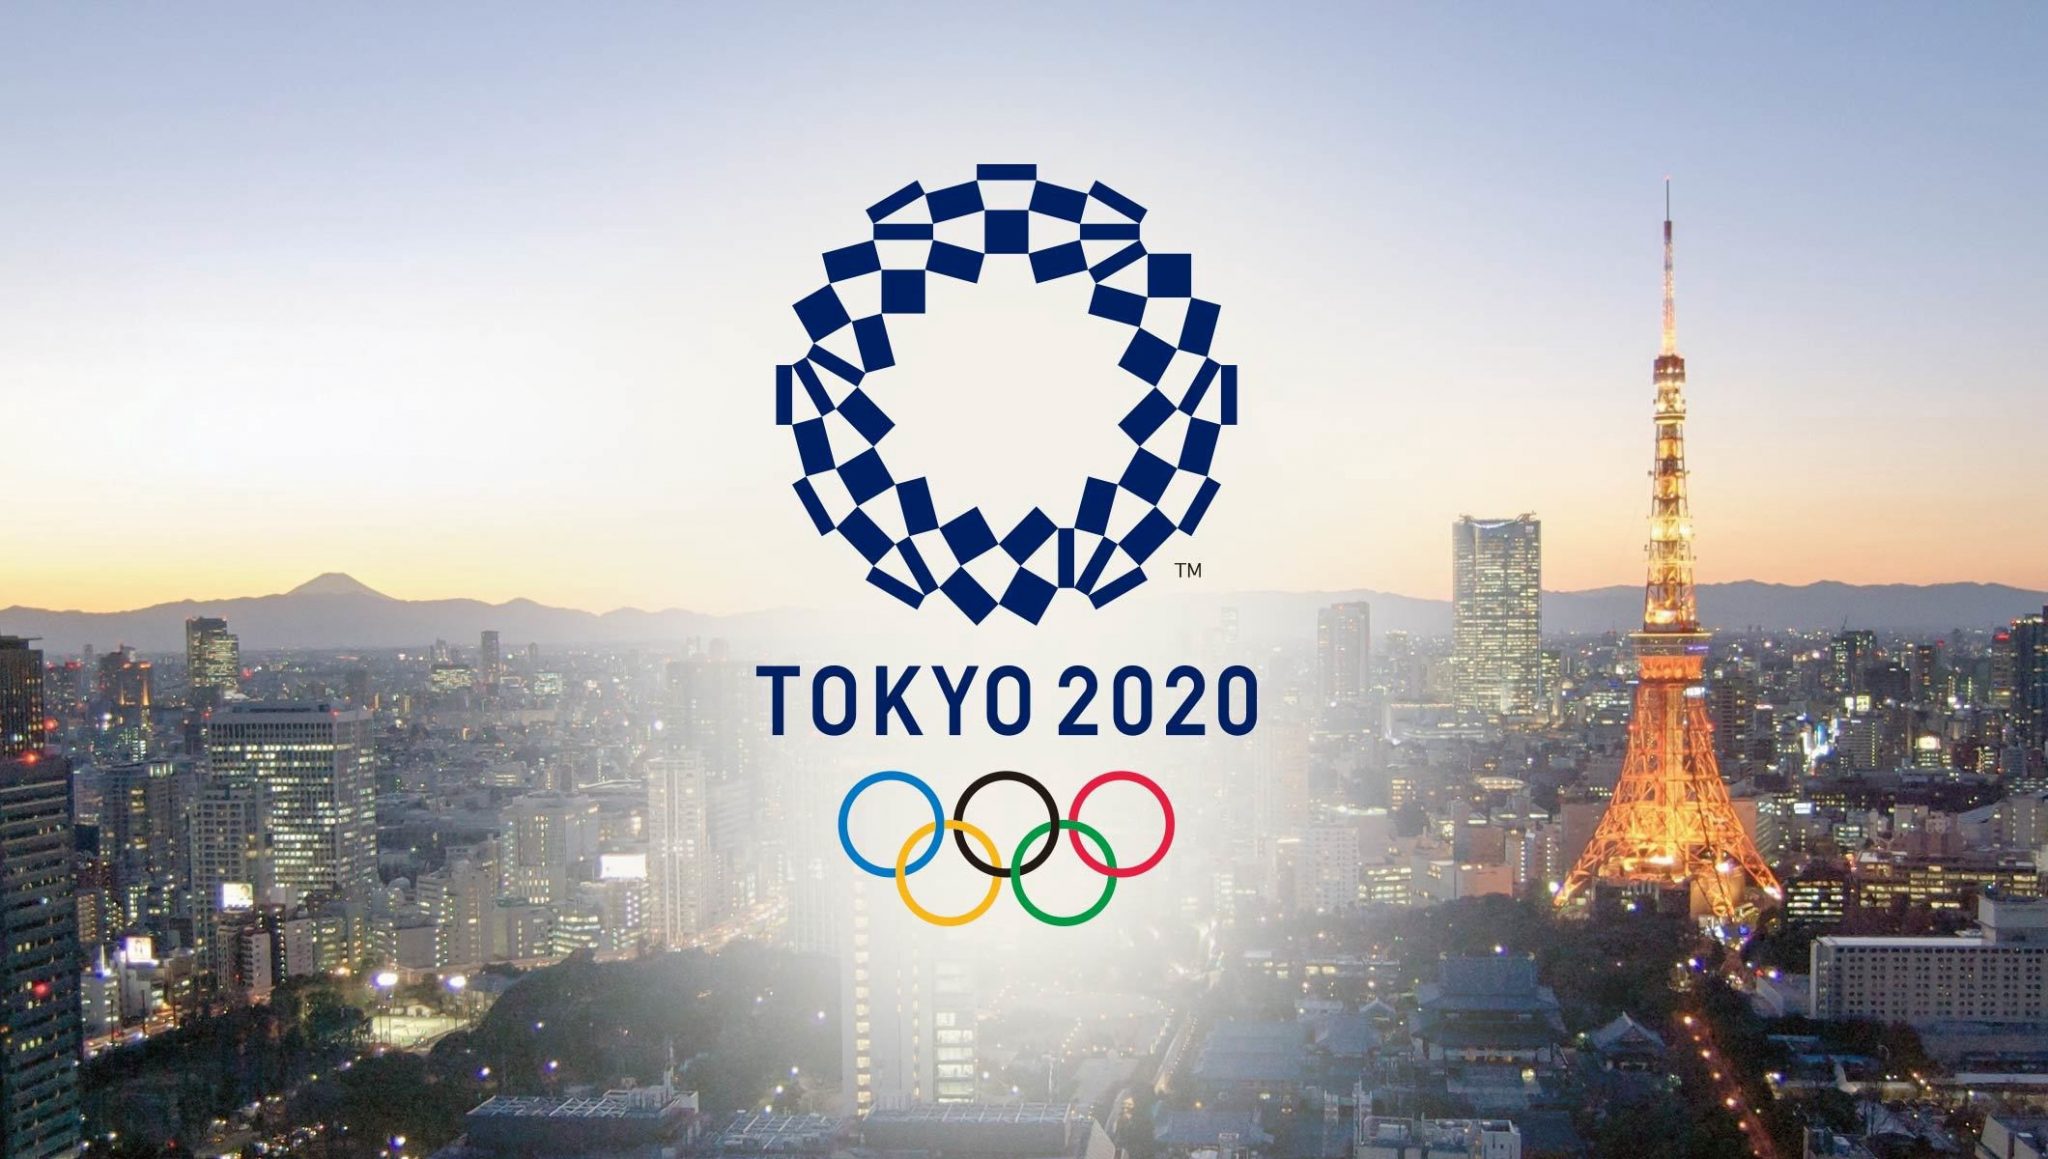 الألعاب الأولمبية طوكيو 2020 .. اليابان تحتضن البطولة الأكبر رياضيا في التاريخ